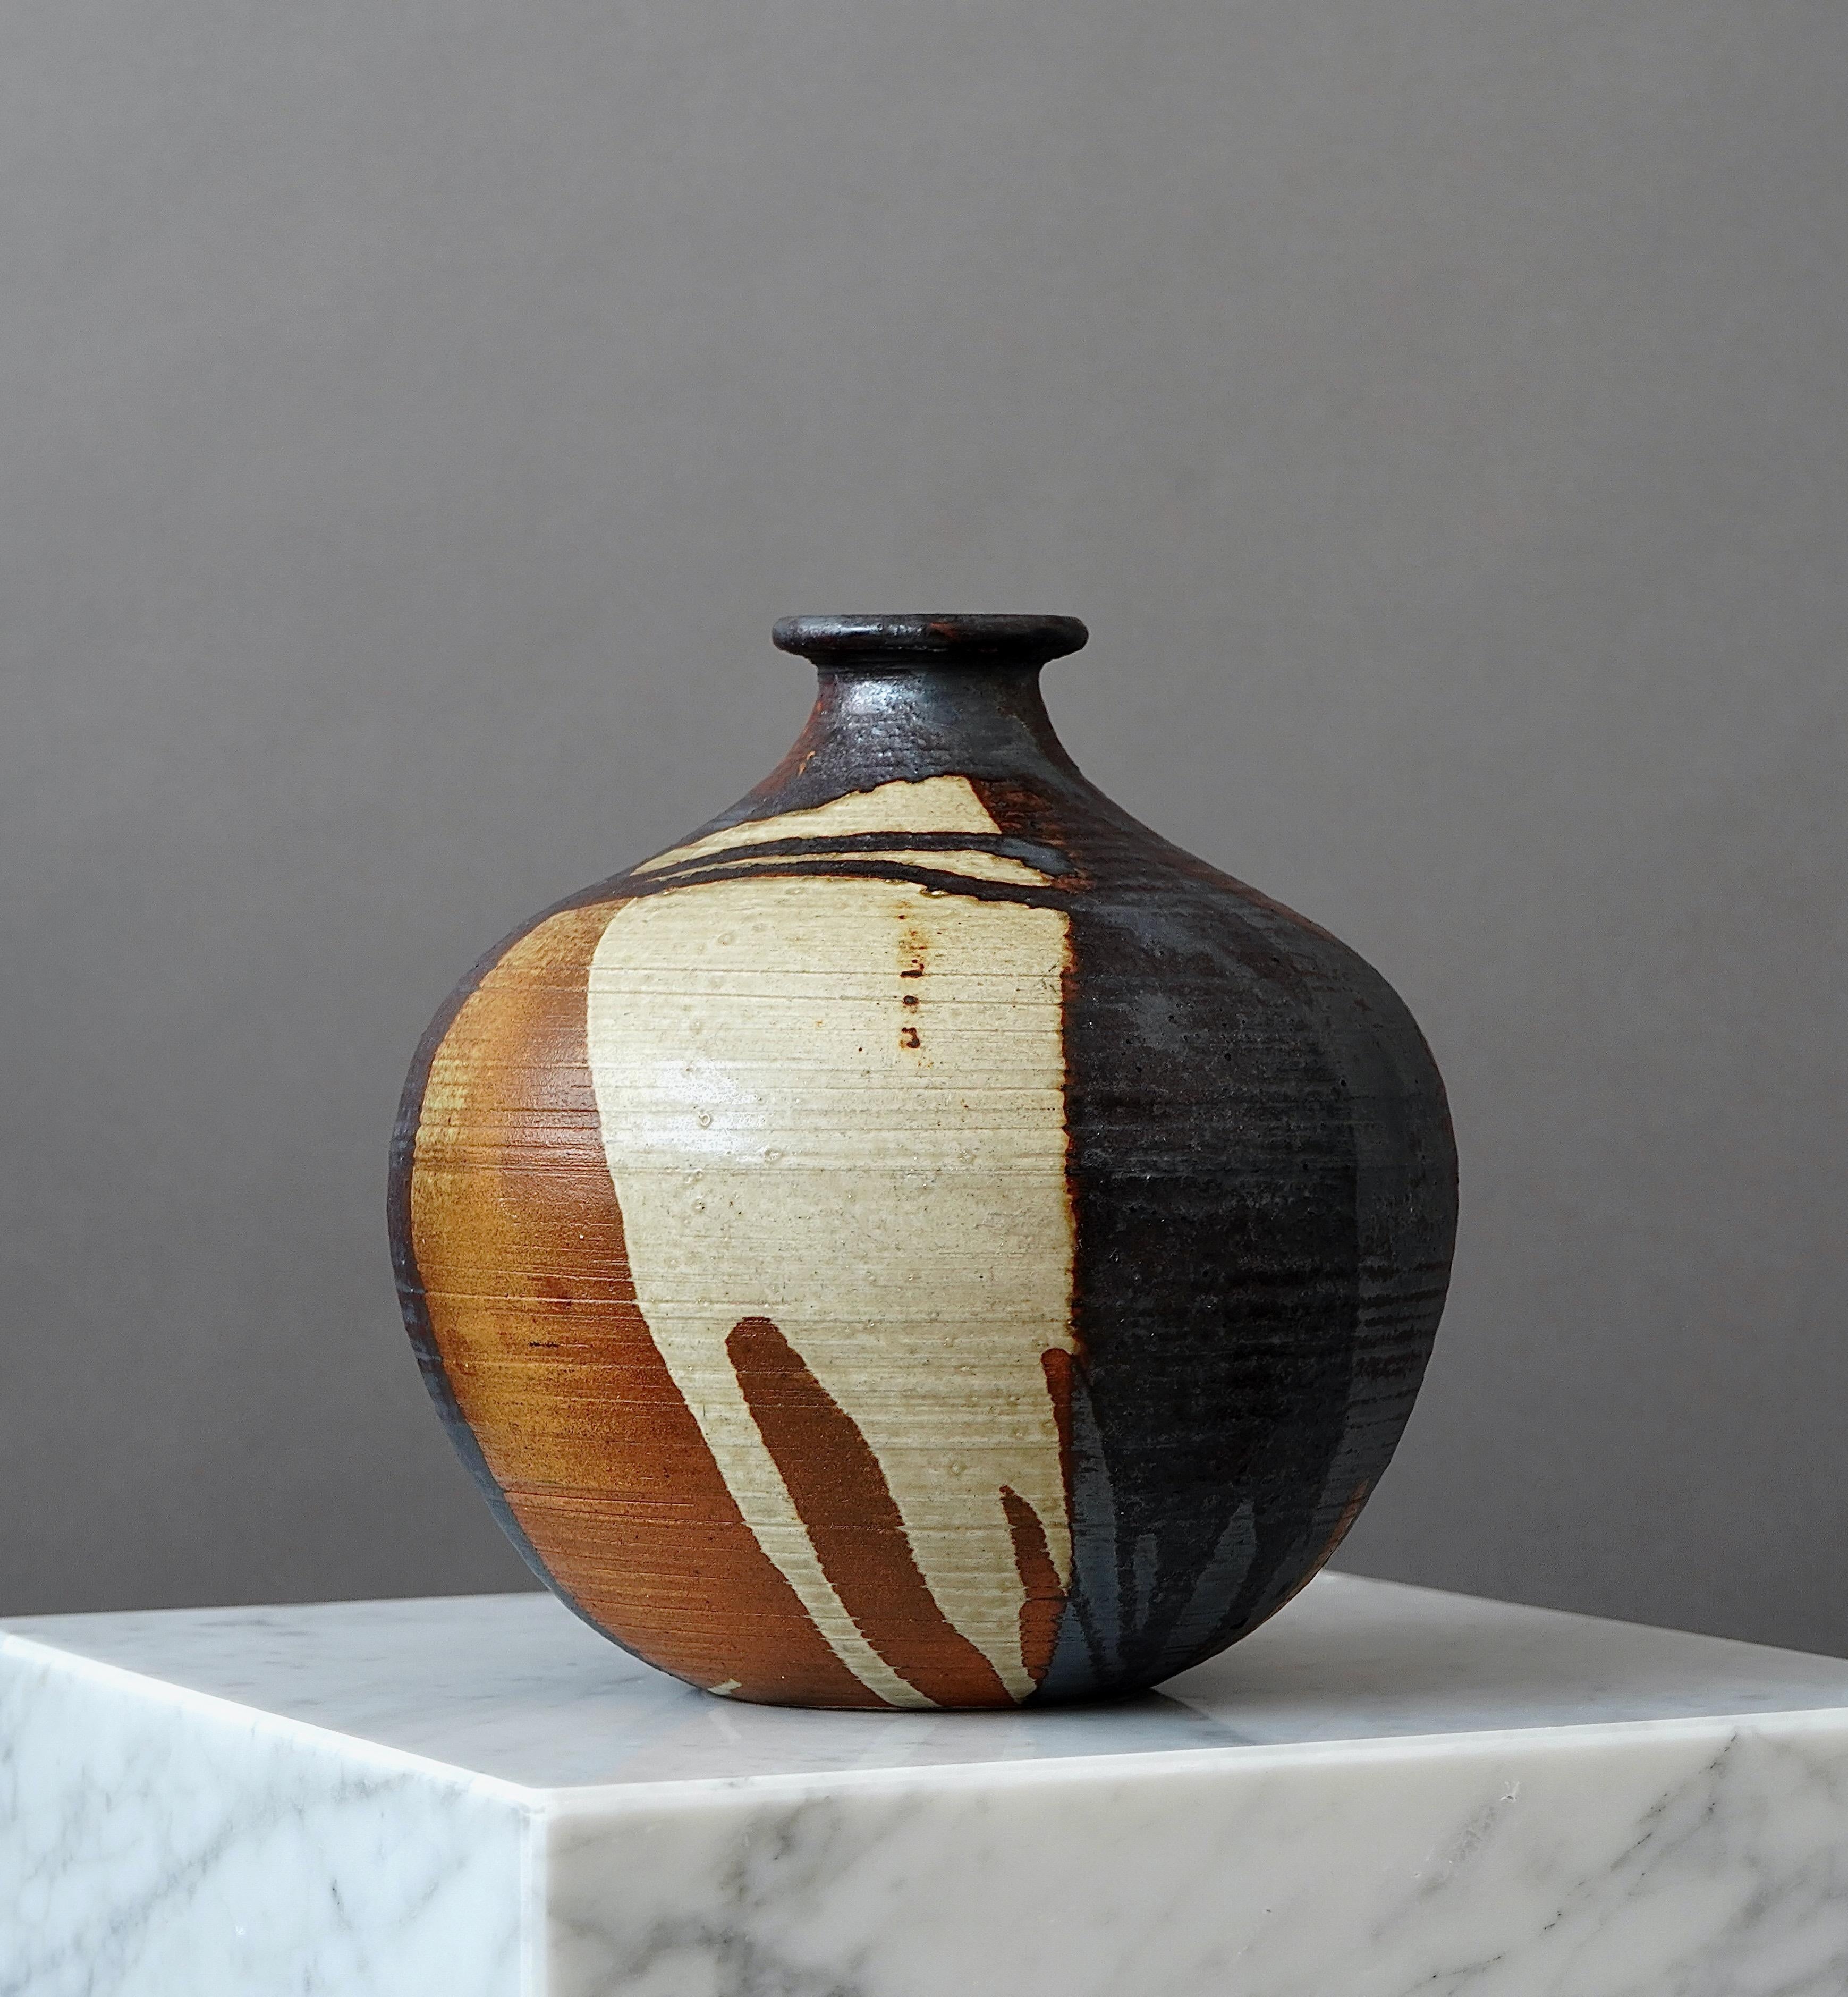 Eine schöne Vase aus Steingut mit toller Glasur.
Hergestellt von Annikki Hovisaari für Arabia, Finnland, 1960er Jahre

Toller Zustand.
Eingeschnittene Signatur 